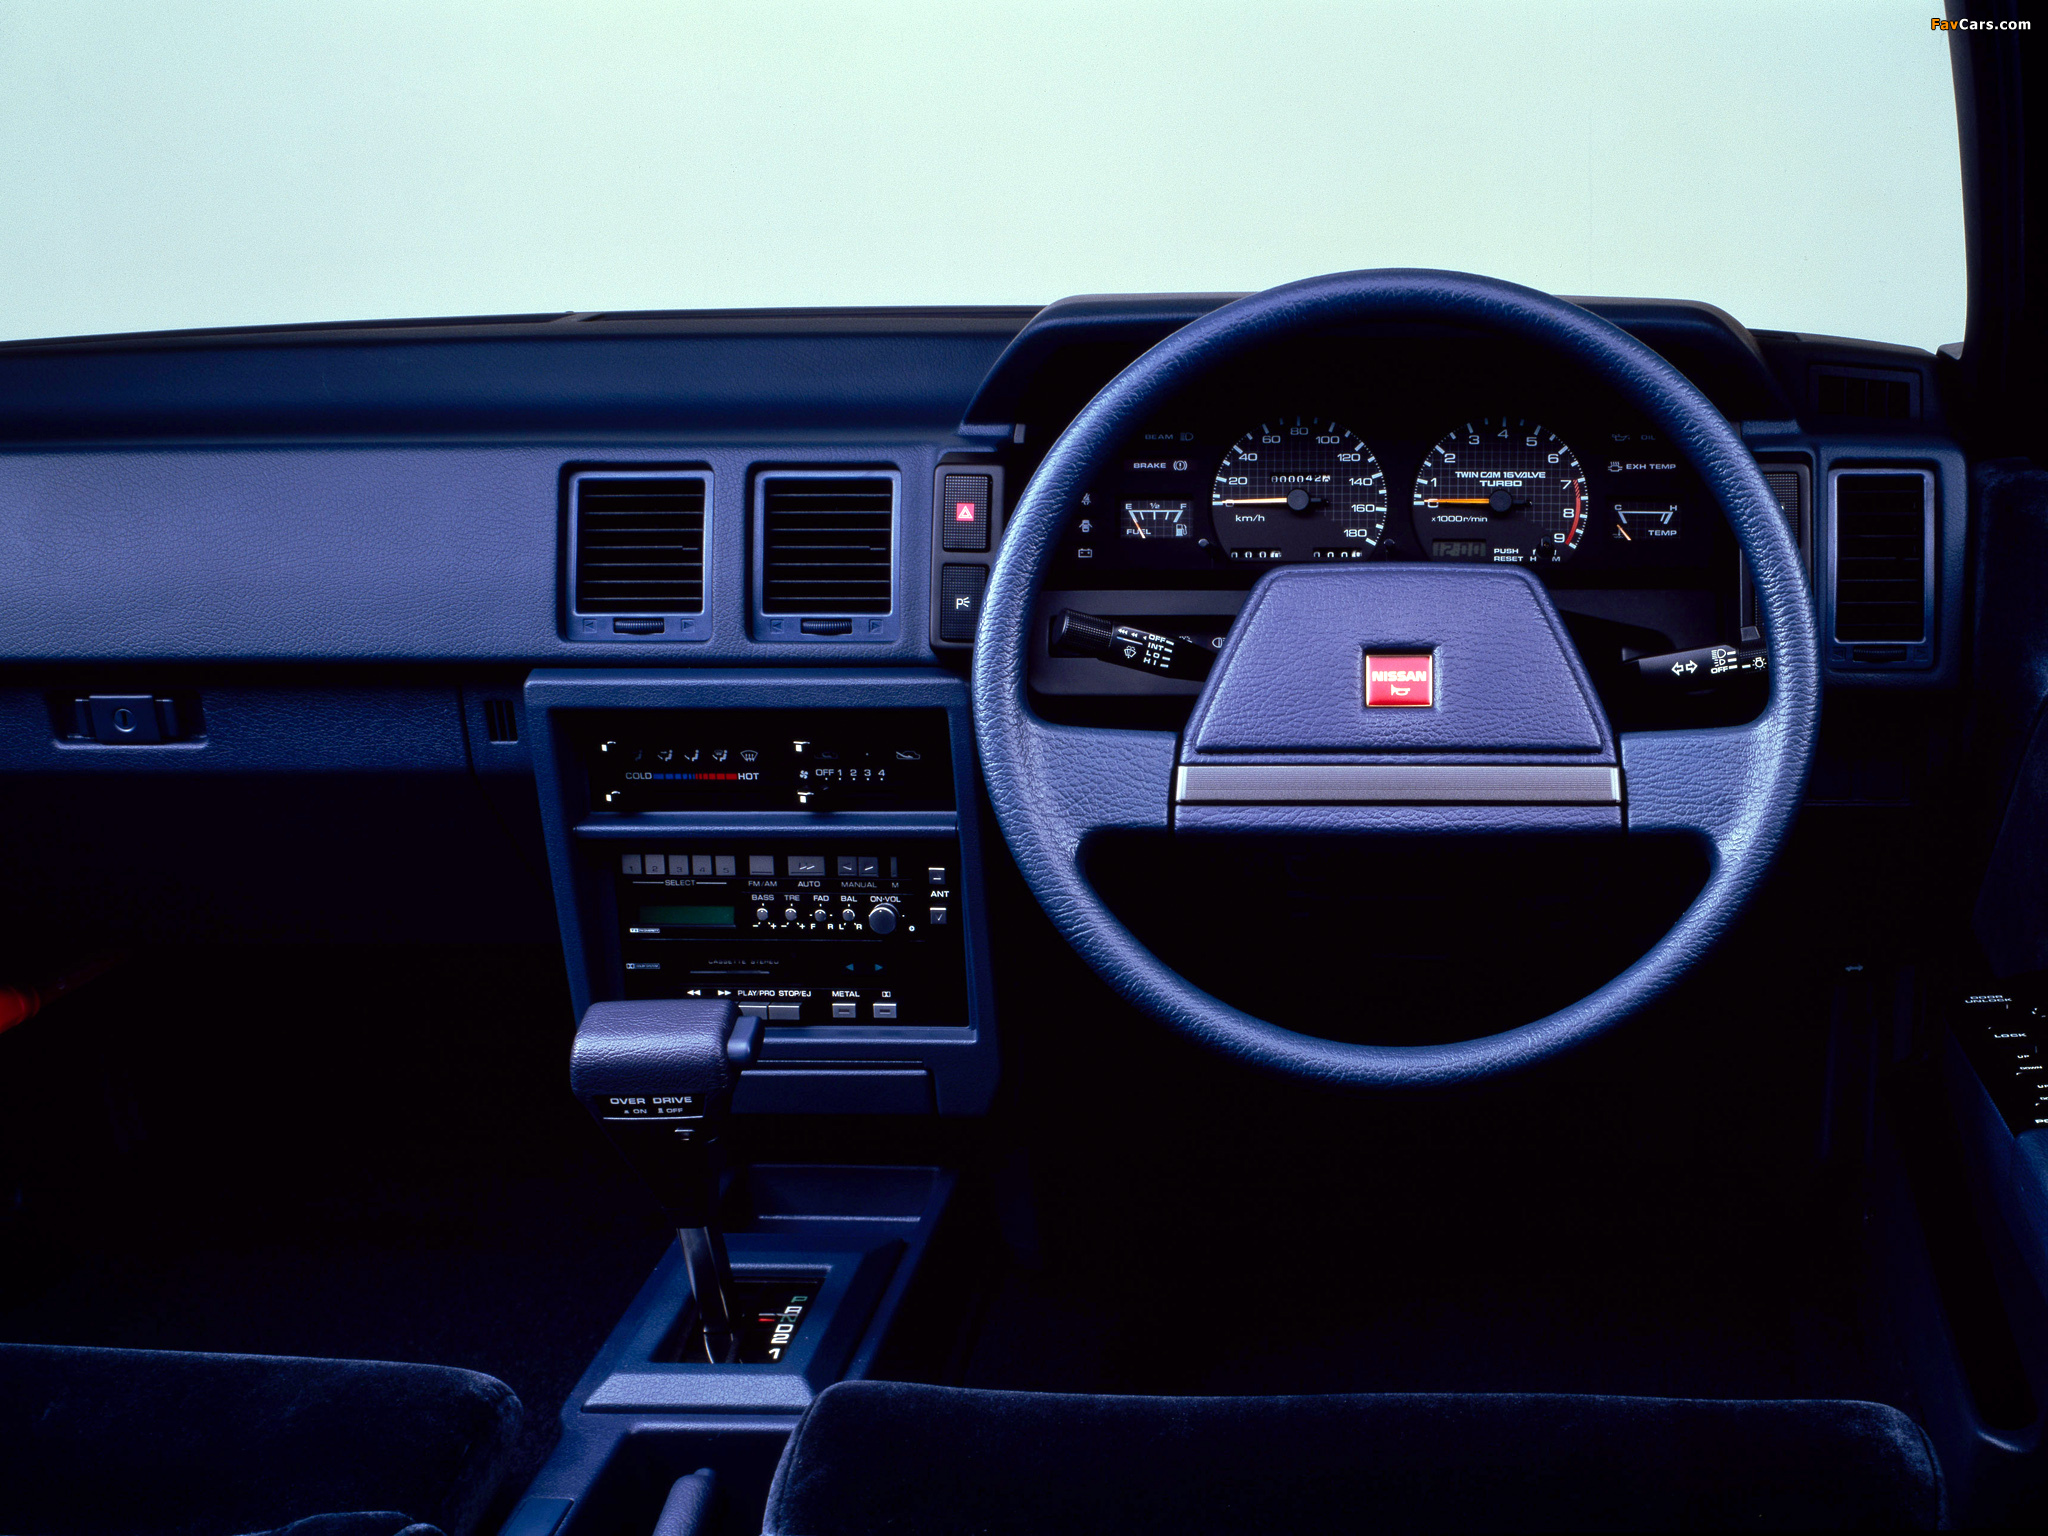 Nissan Stanza Supremo (T12) 1986–88 pictures (2048 x 1536)